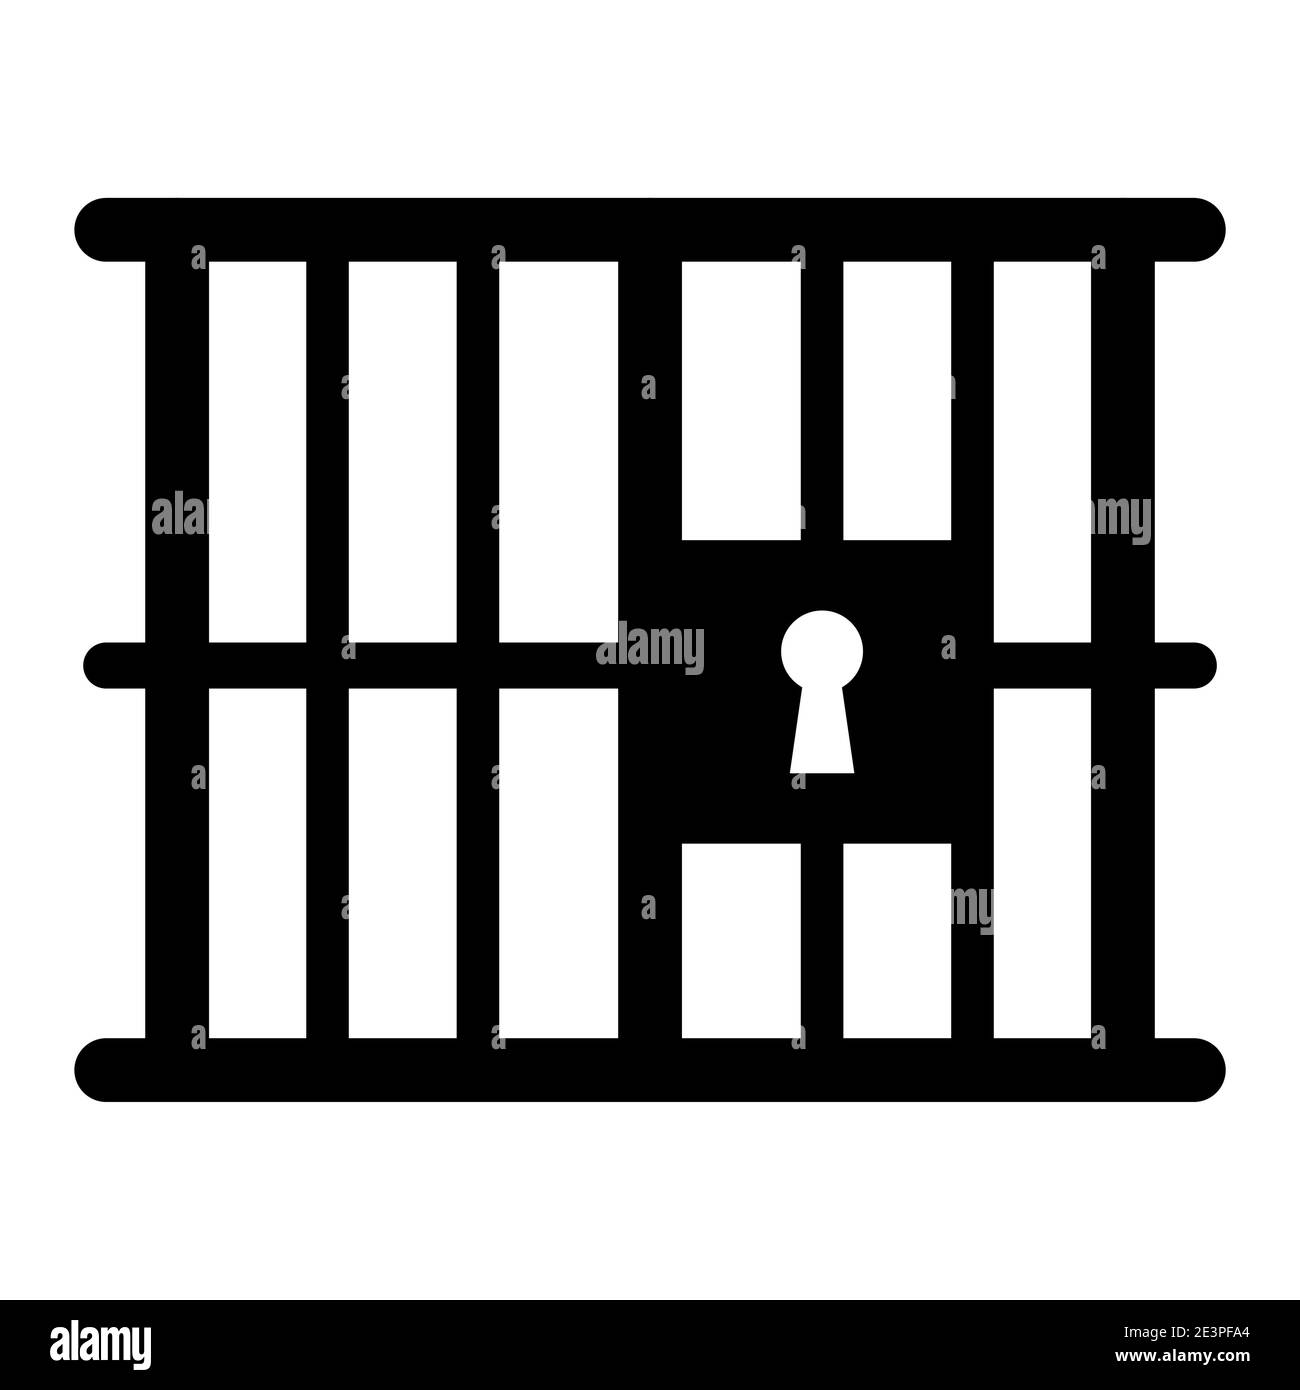 Simbolo della silhouette della prigione o della prigione. Gabbia metallica con barre e serratura. Icona della giustizia o della punizione criminale. Forma nera vettoriale isolata su sfondo bianco. Illustrazione Vettoriale